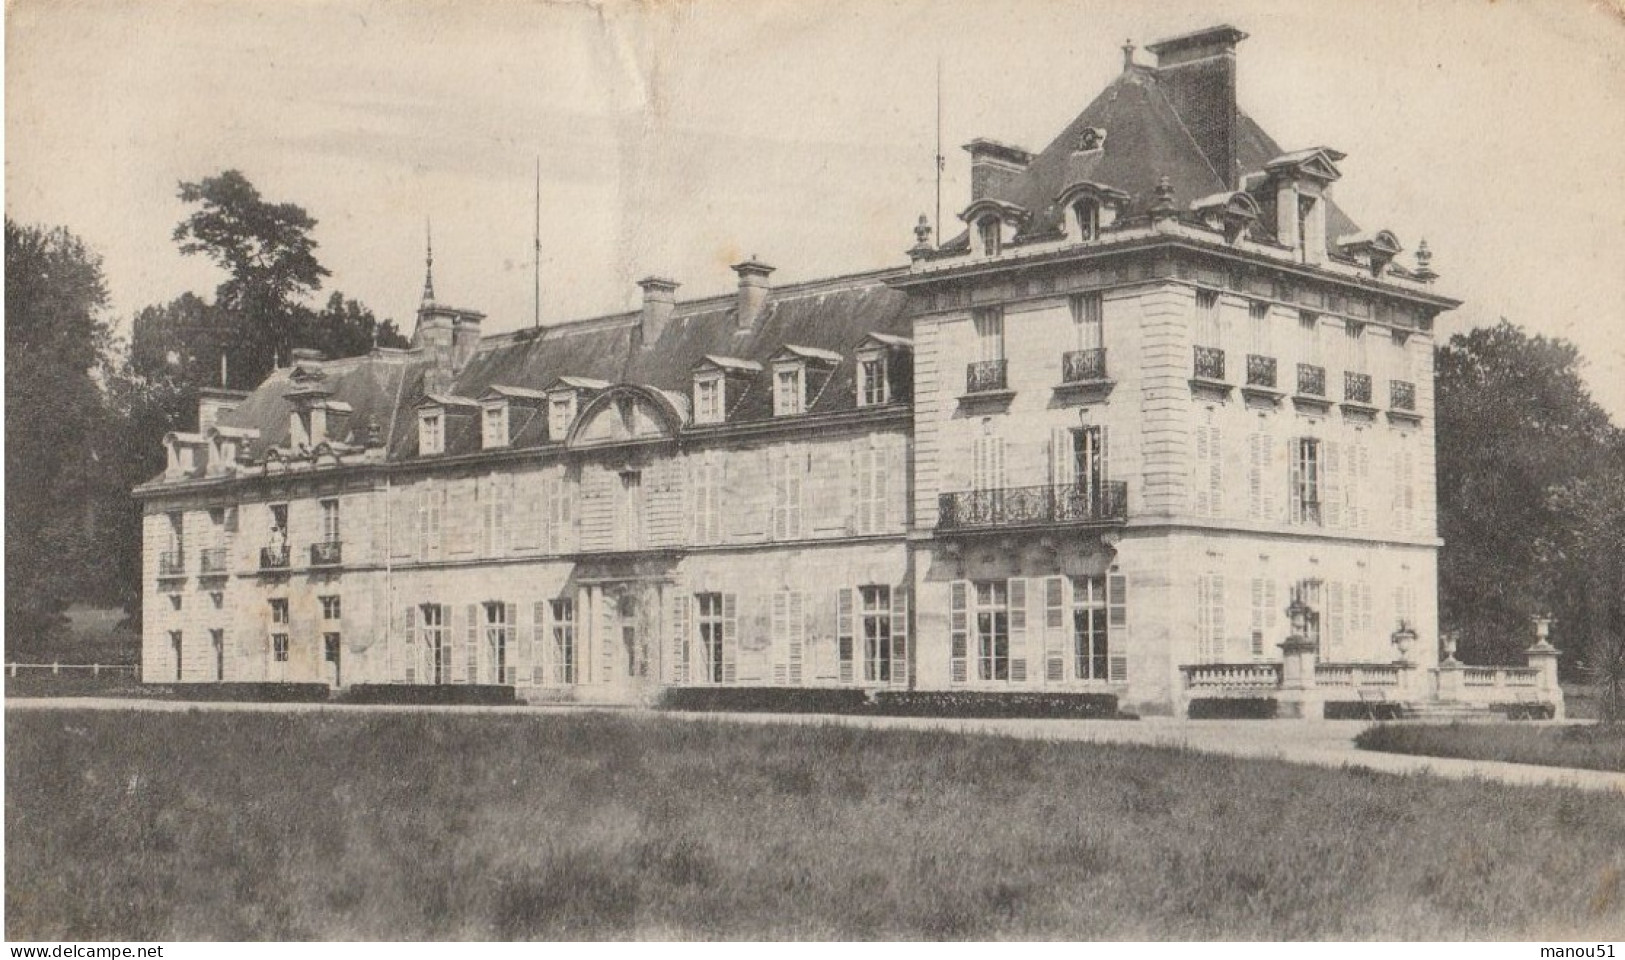 RETHONDES  Château De Sainte Claire - Rethondes